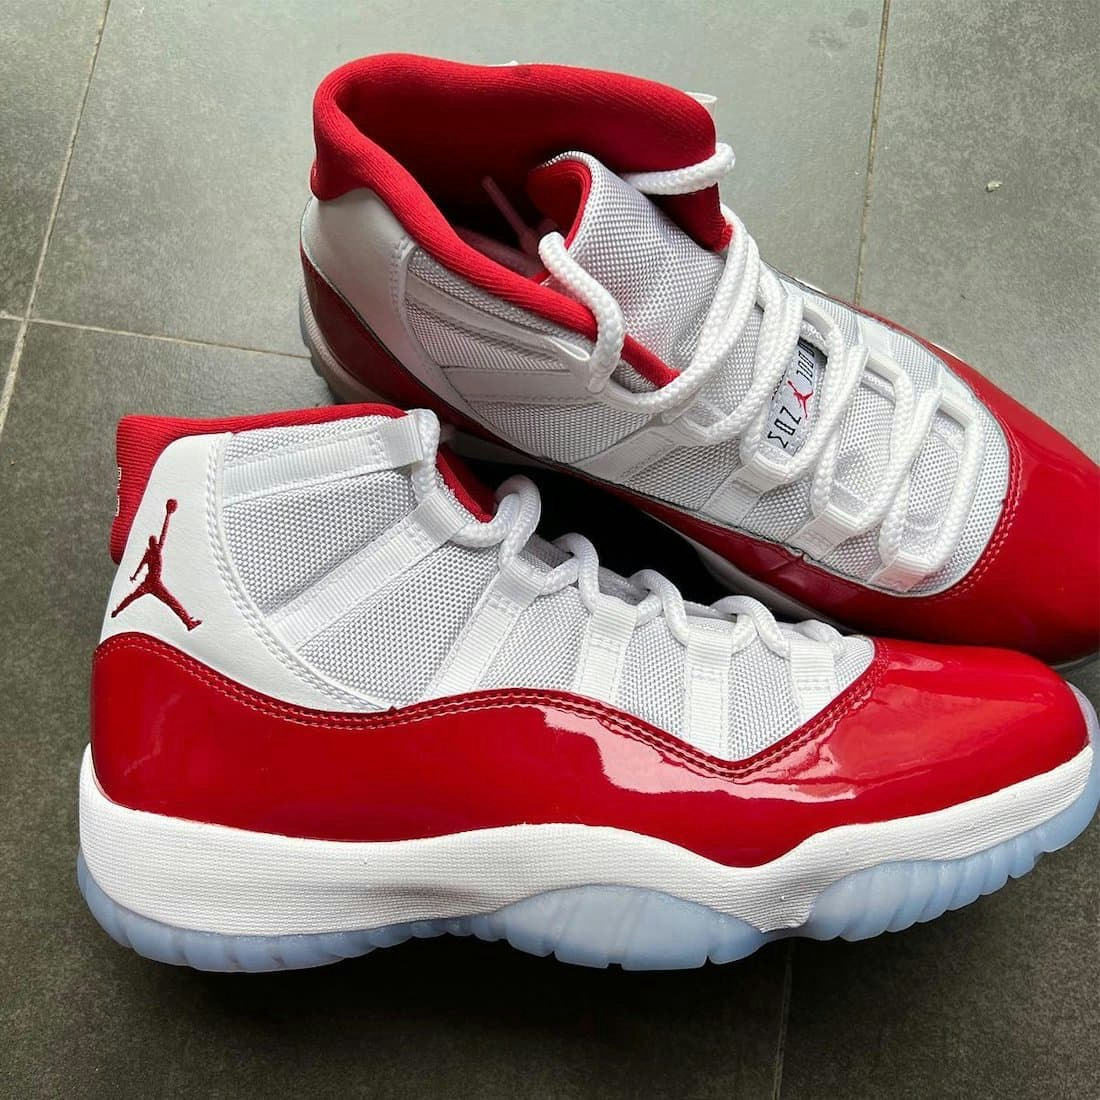 Air Jordan 11 "Cherry" 